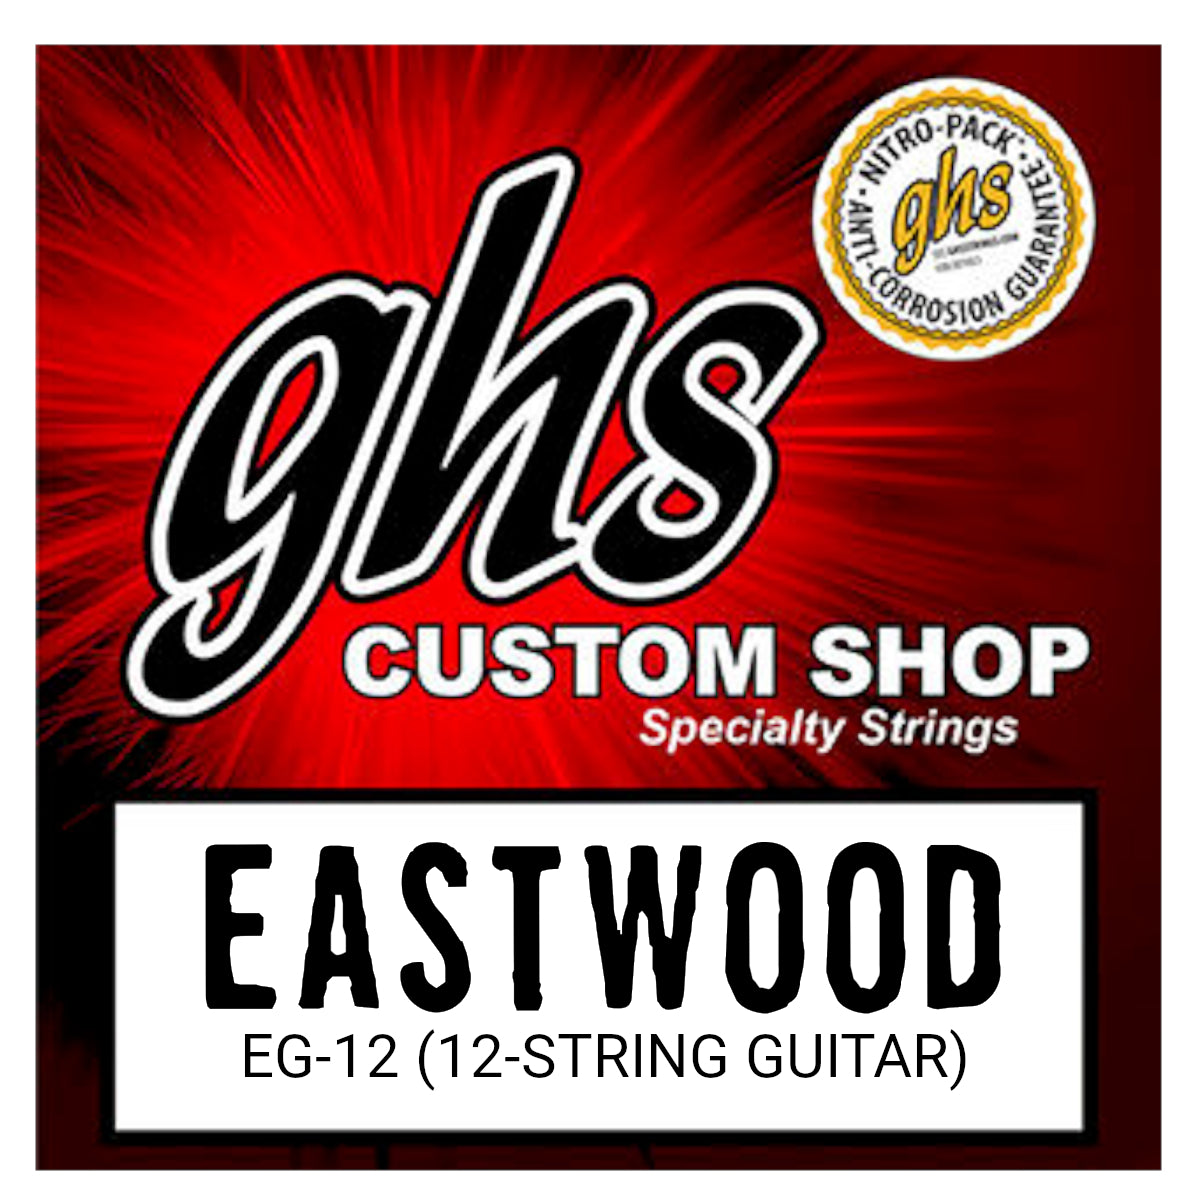 Eastwood/GHS Custom Strings - 12 String Guitar